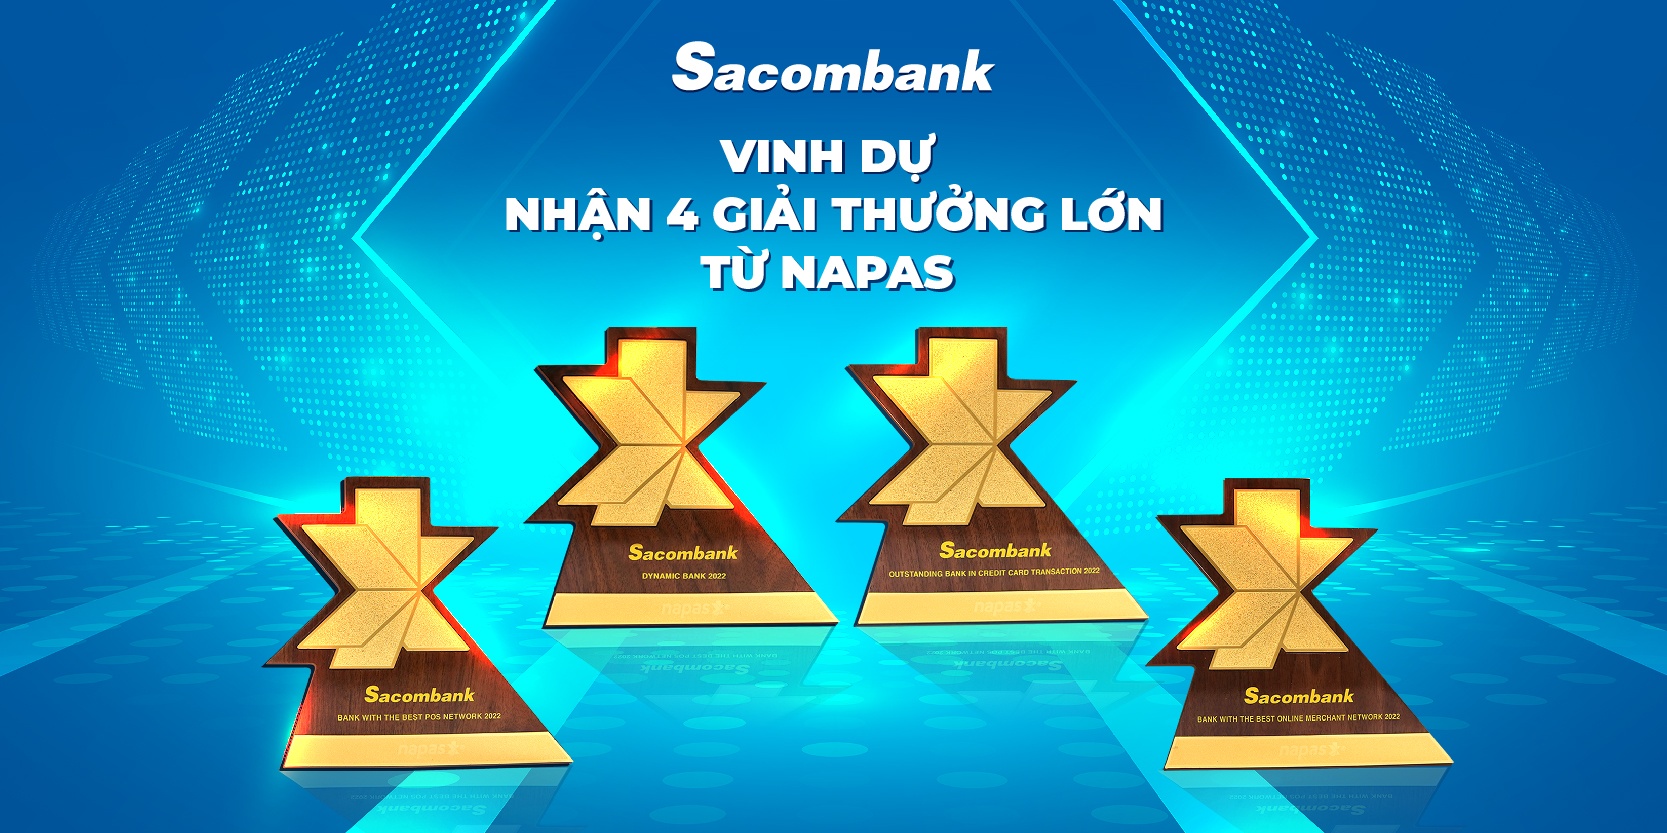 Sacombank nhận 4 giải thưởng lớn từ NAPAS